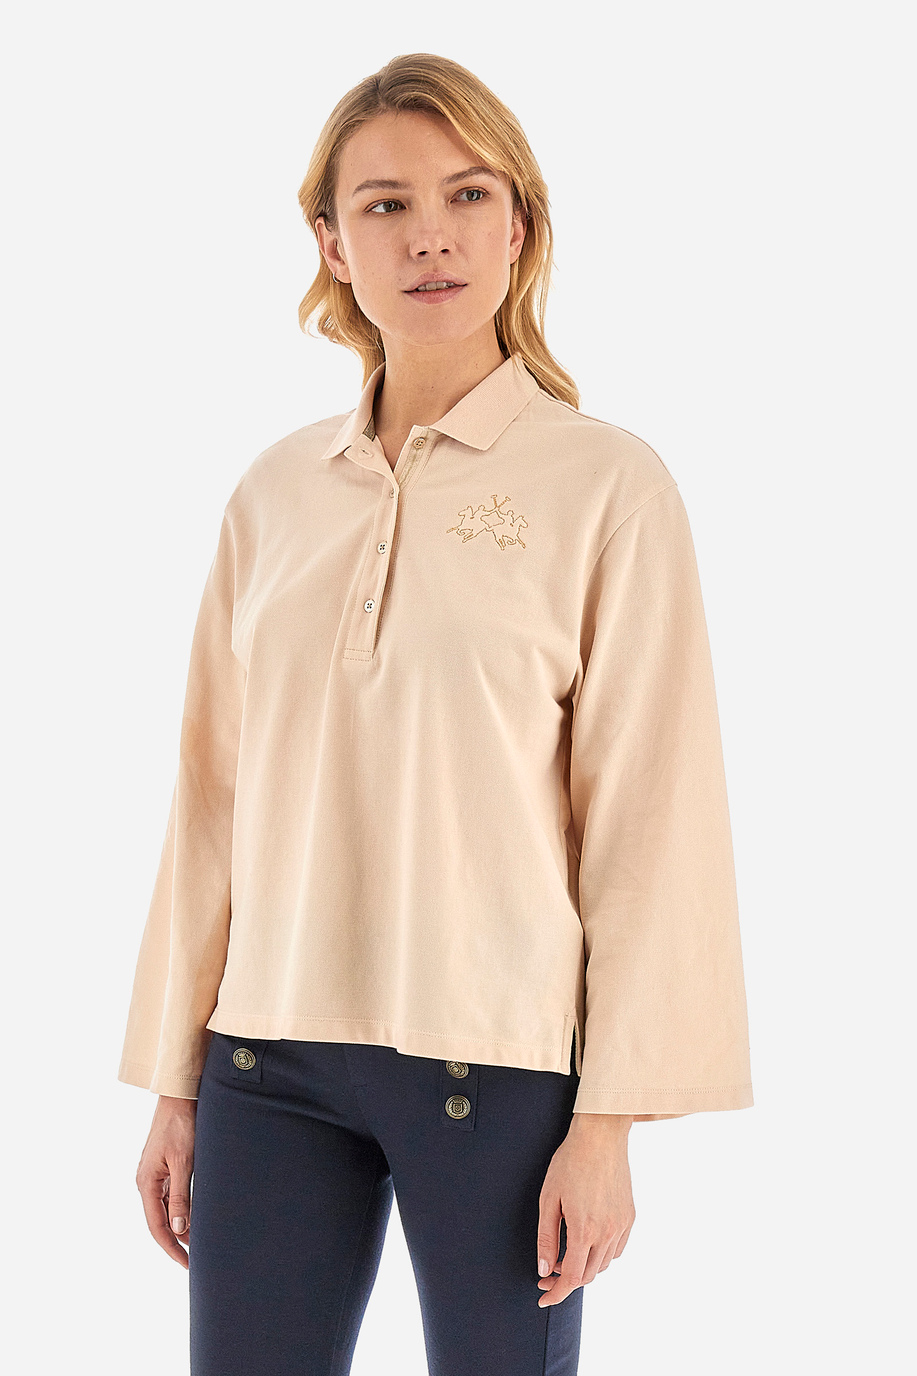 Damen -Poloshirt regular fit - Welch - Timeless | La Martina - Official Online Shop